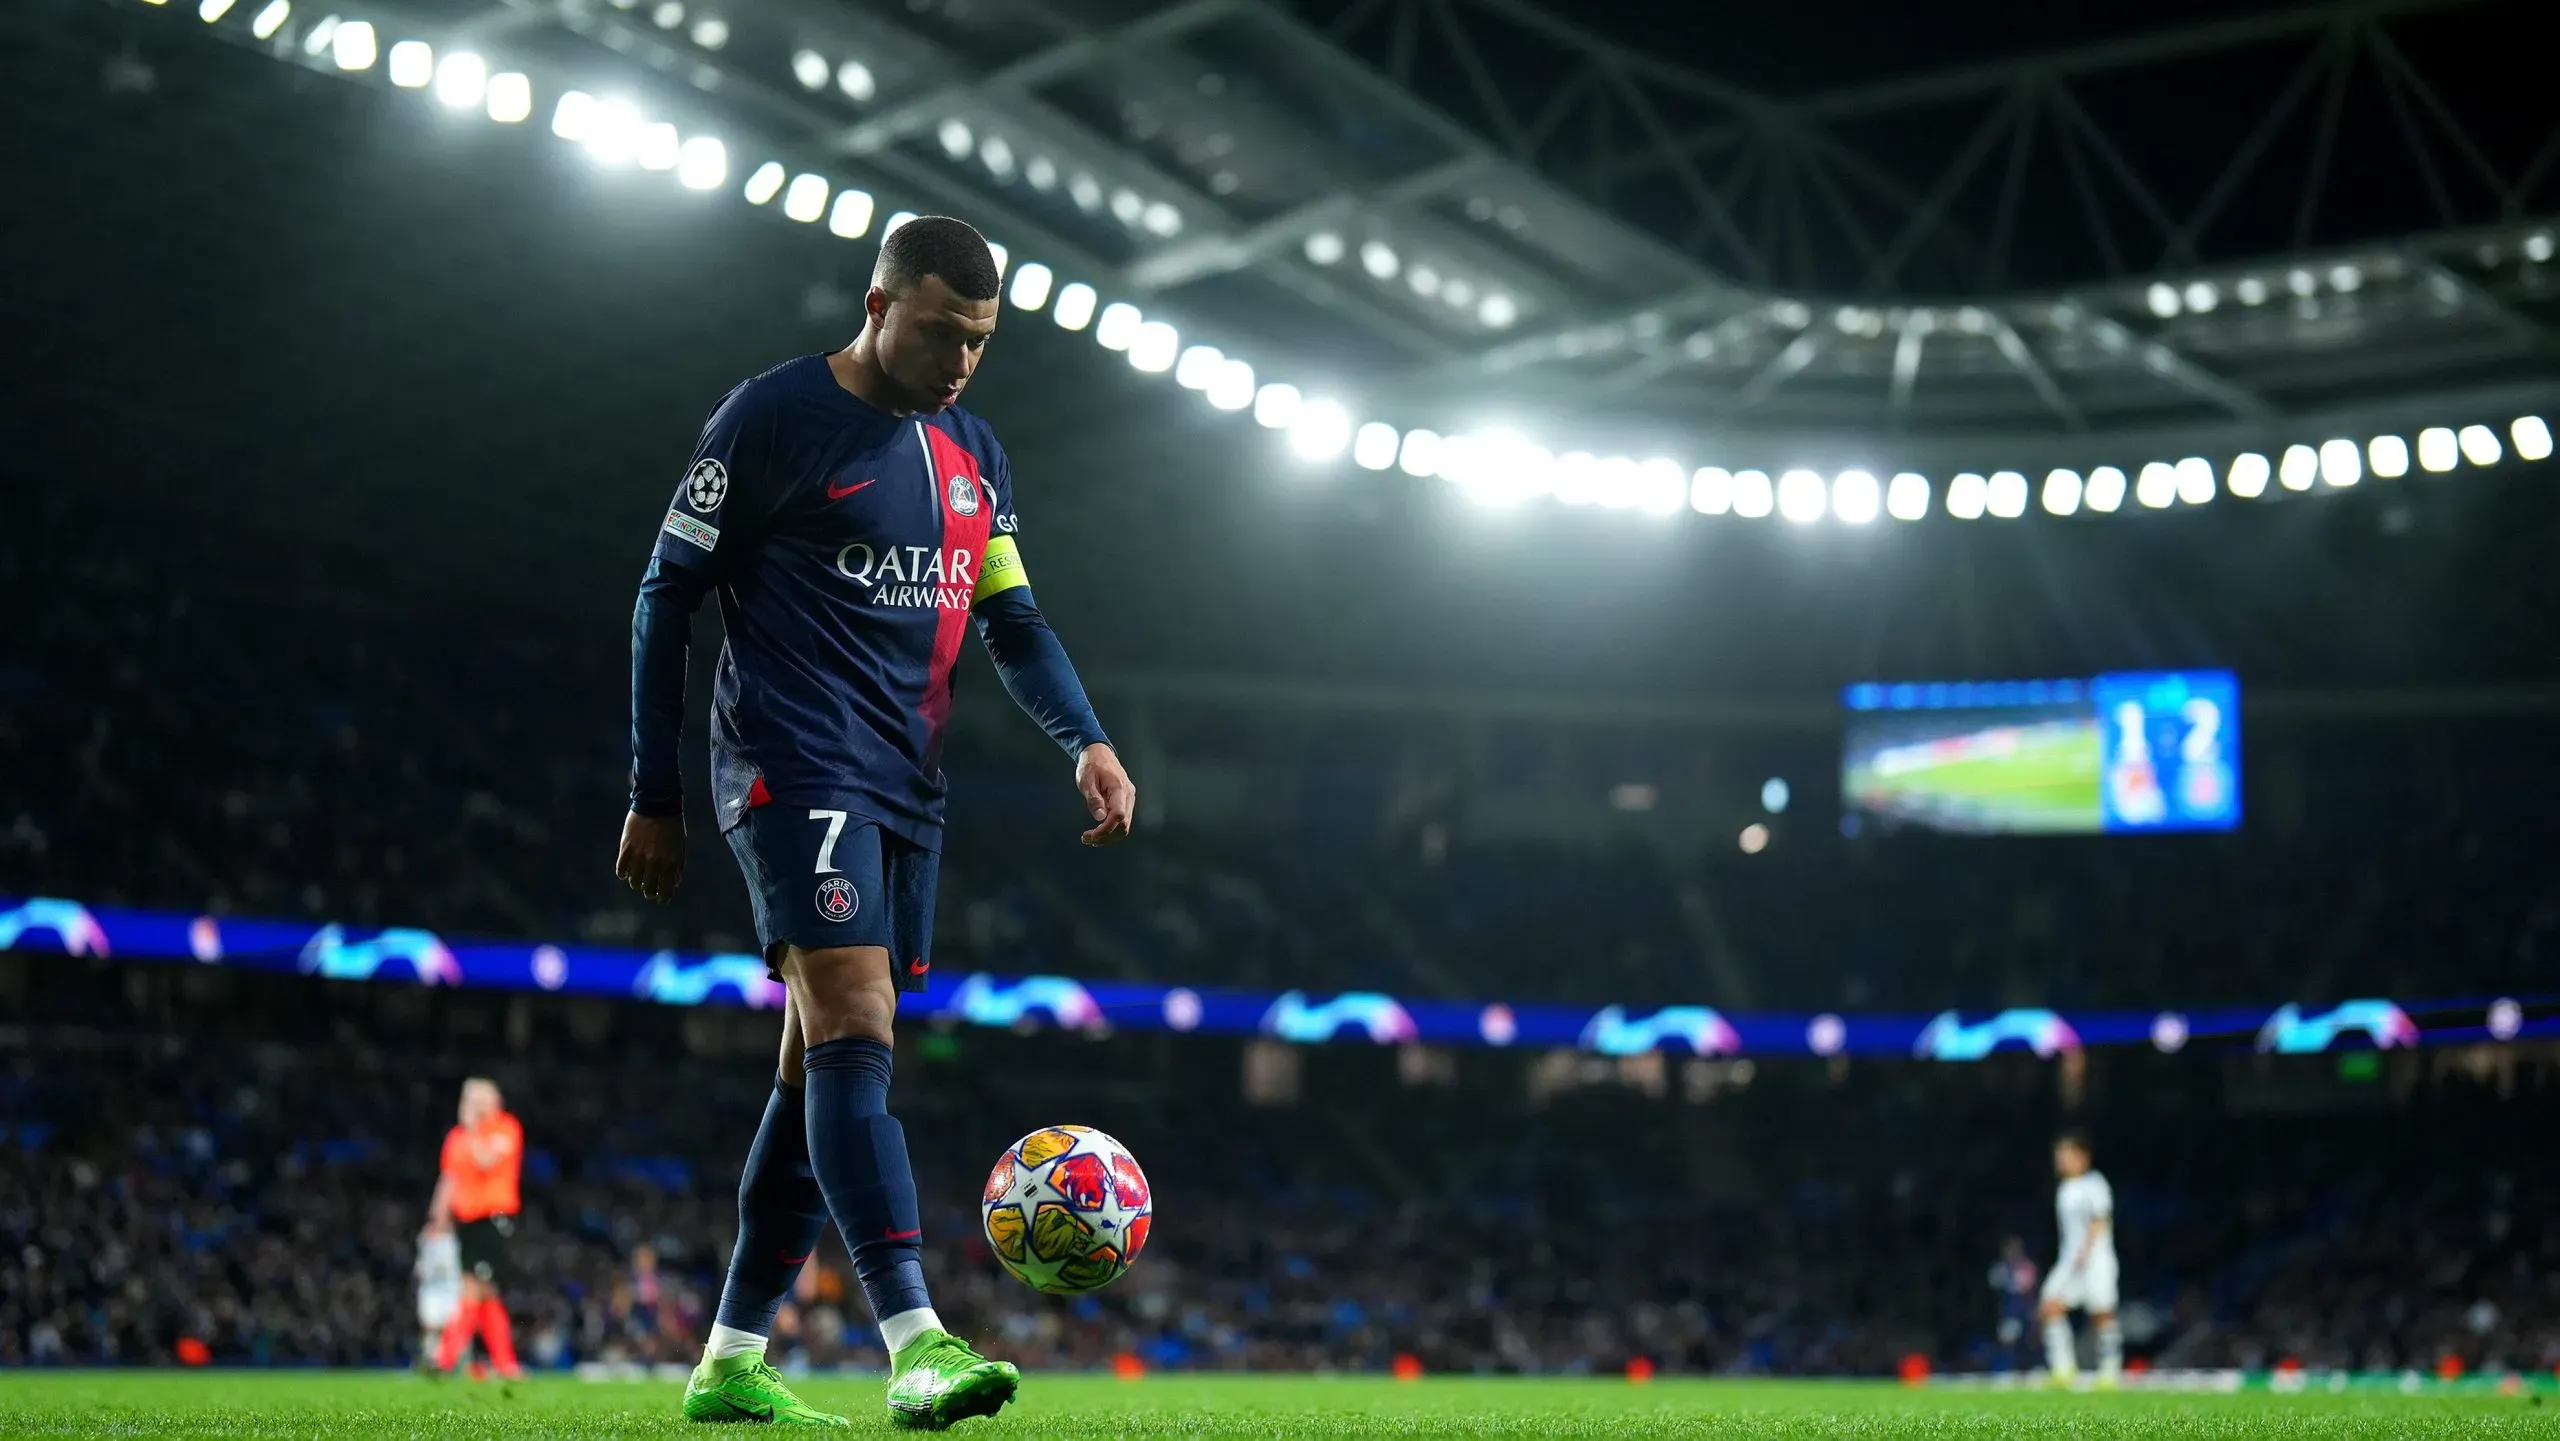 El mundo esperando ver el nivel que Mbappé pueda mostrar durante lo que queda de Champions League (Getty Images)